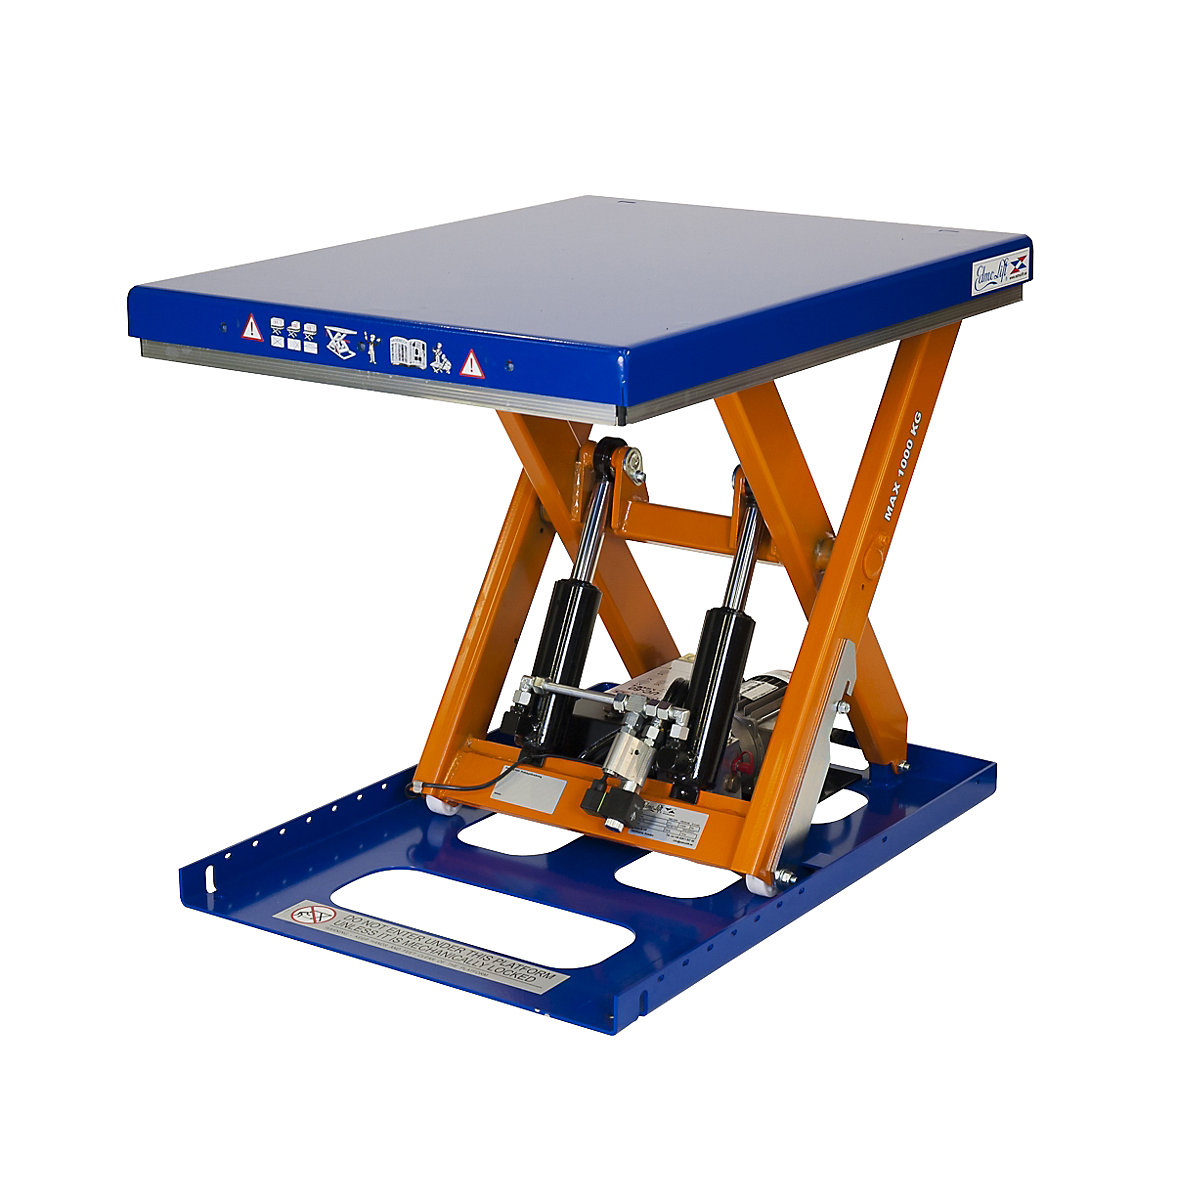 Compact lift table – Edmolift